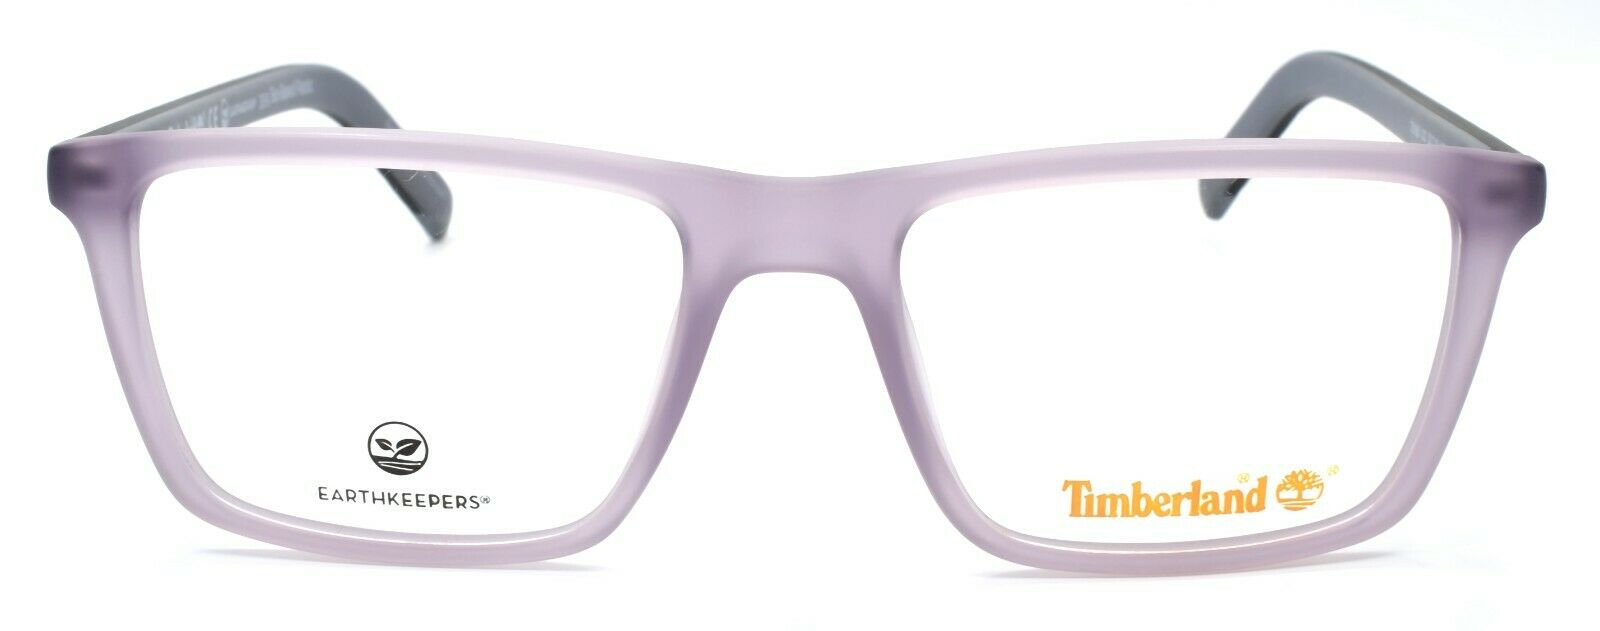 2-TIMBERLAND TB1680 020 Men's Eyeglasses Frames 52-18-145 Matte Violet-889214162748-IKSpecs